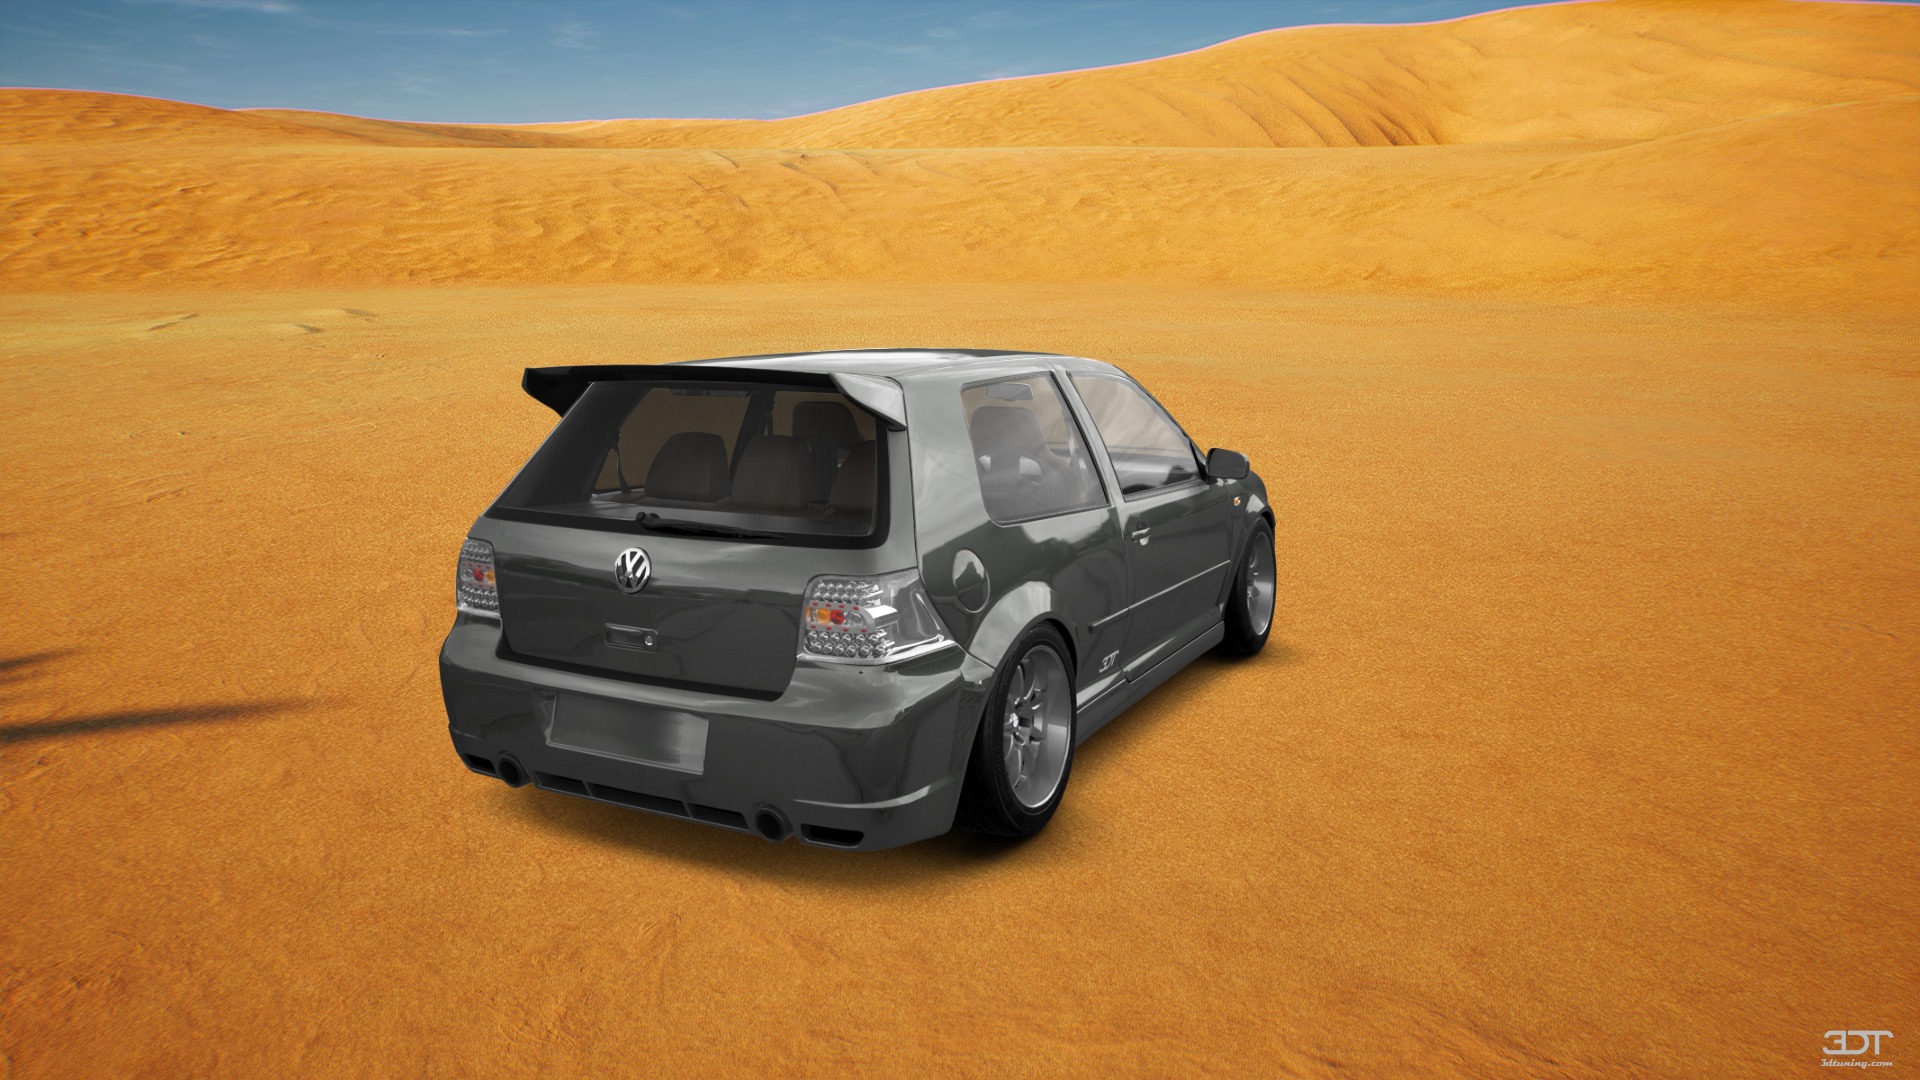 Volkswagen Golf 4 (mk4) 3 Door Hatchback 1997 tuning